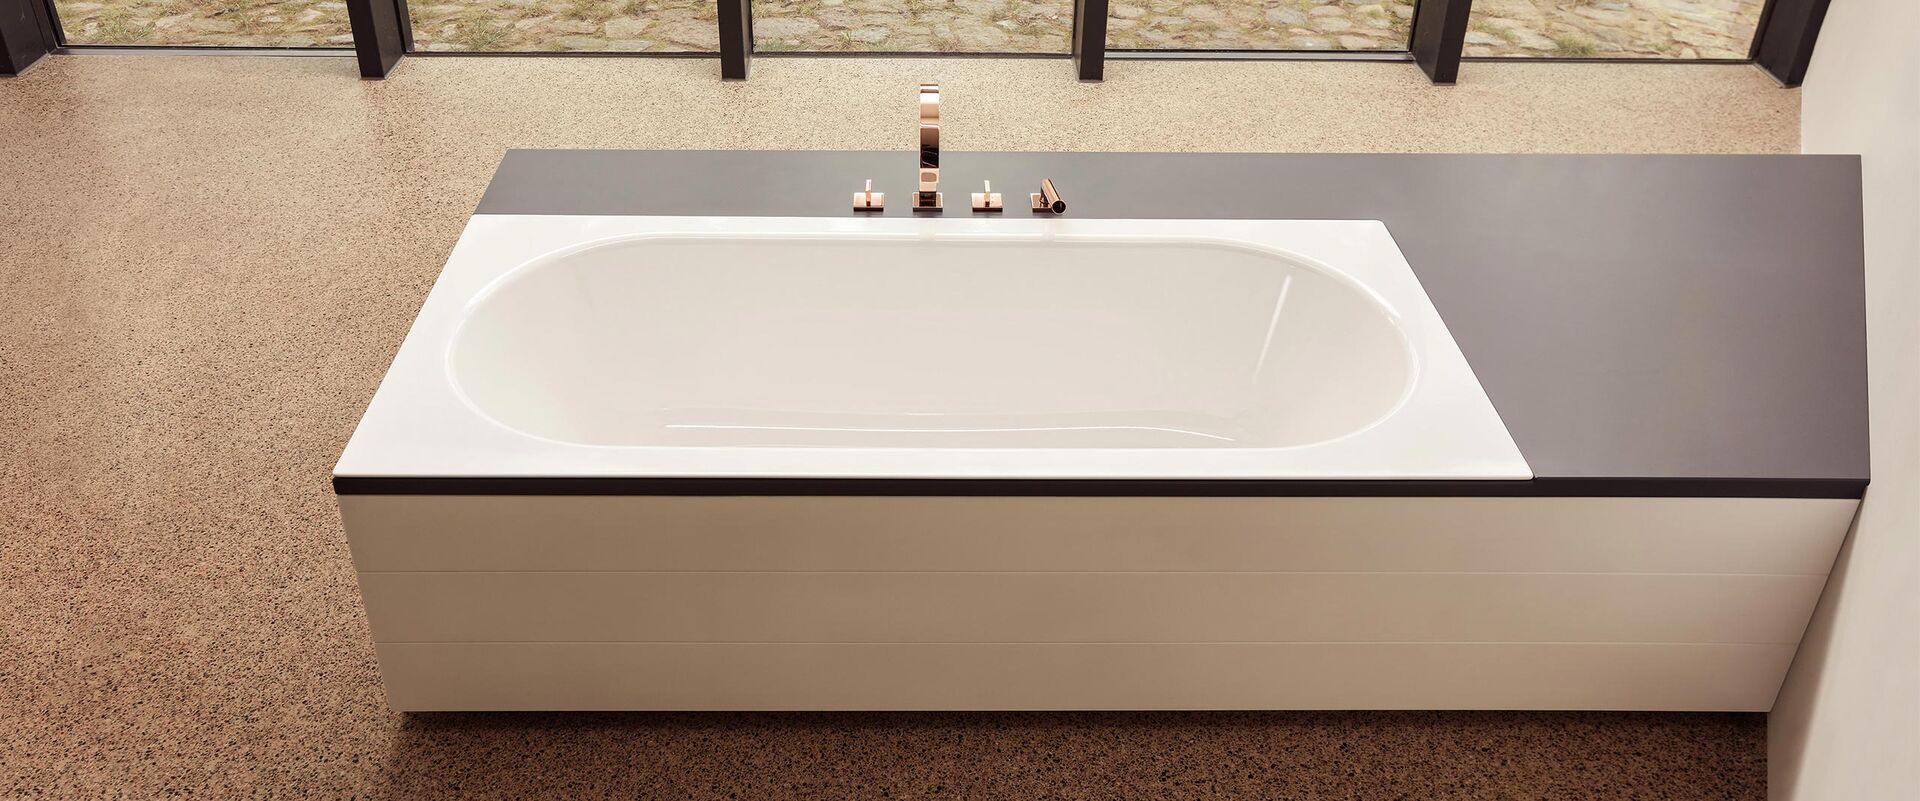 Badewanne weiss eingebaut mit 3-Loch Badewannenarmatur in Kupfer.